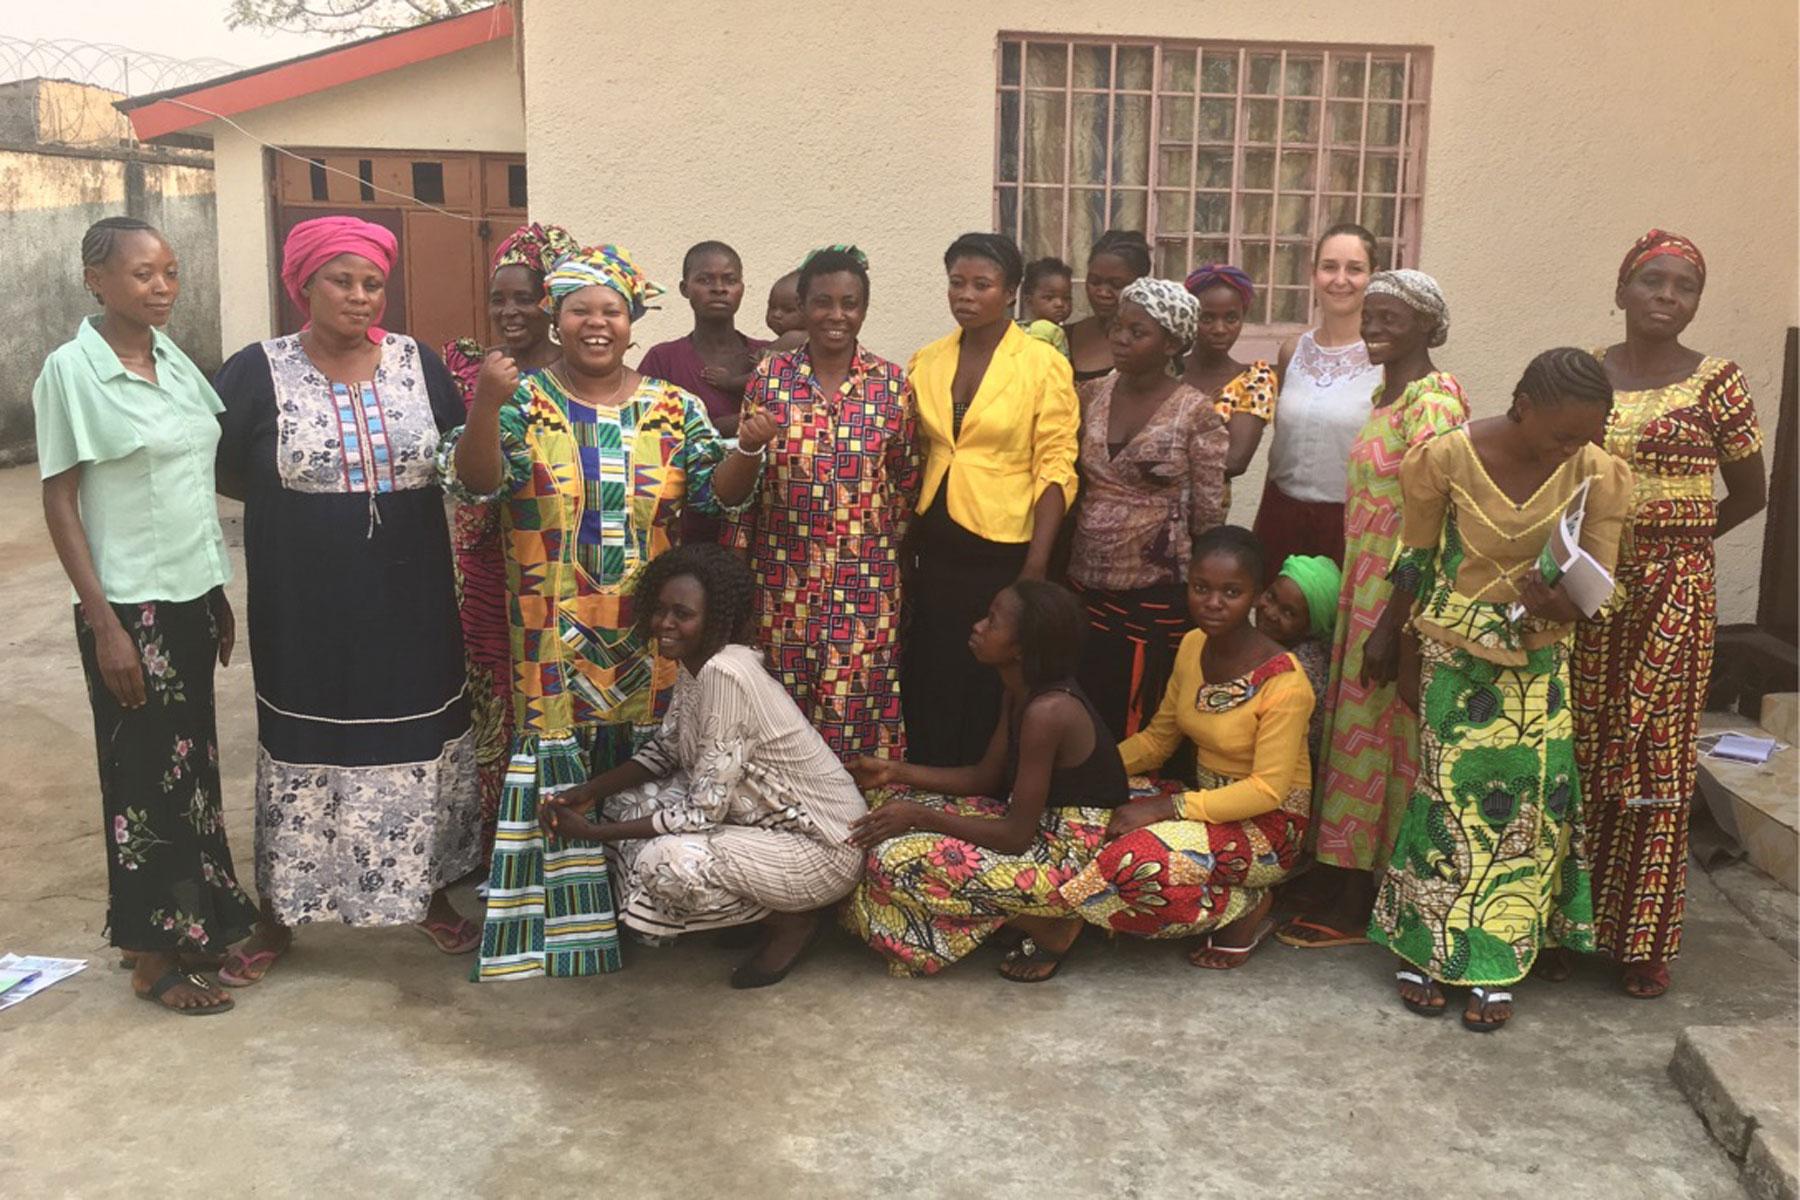 Vertreterinnen und Vertreter des LWB gehörten einer Delegation an, die sich vor kurzem mit Überlebenden sexualisierter Gewalt in der Demokratischen Republik Kongo getroffen hat. Foto: Mukwege Foundation